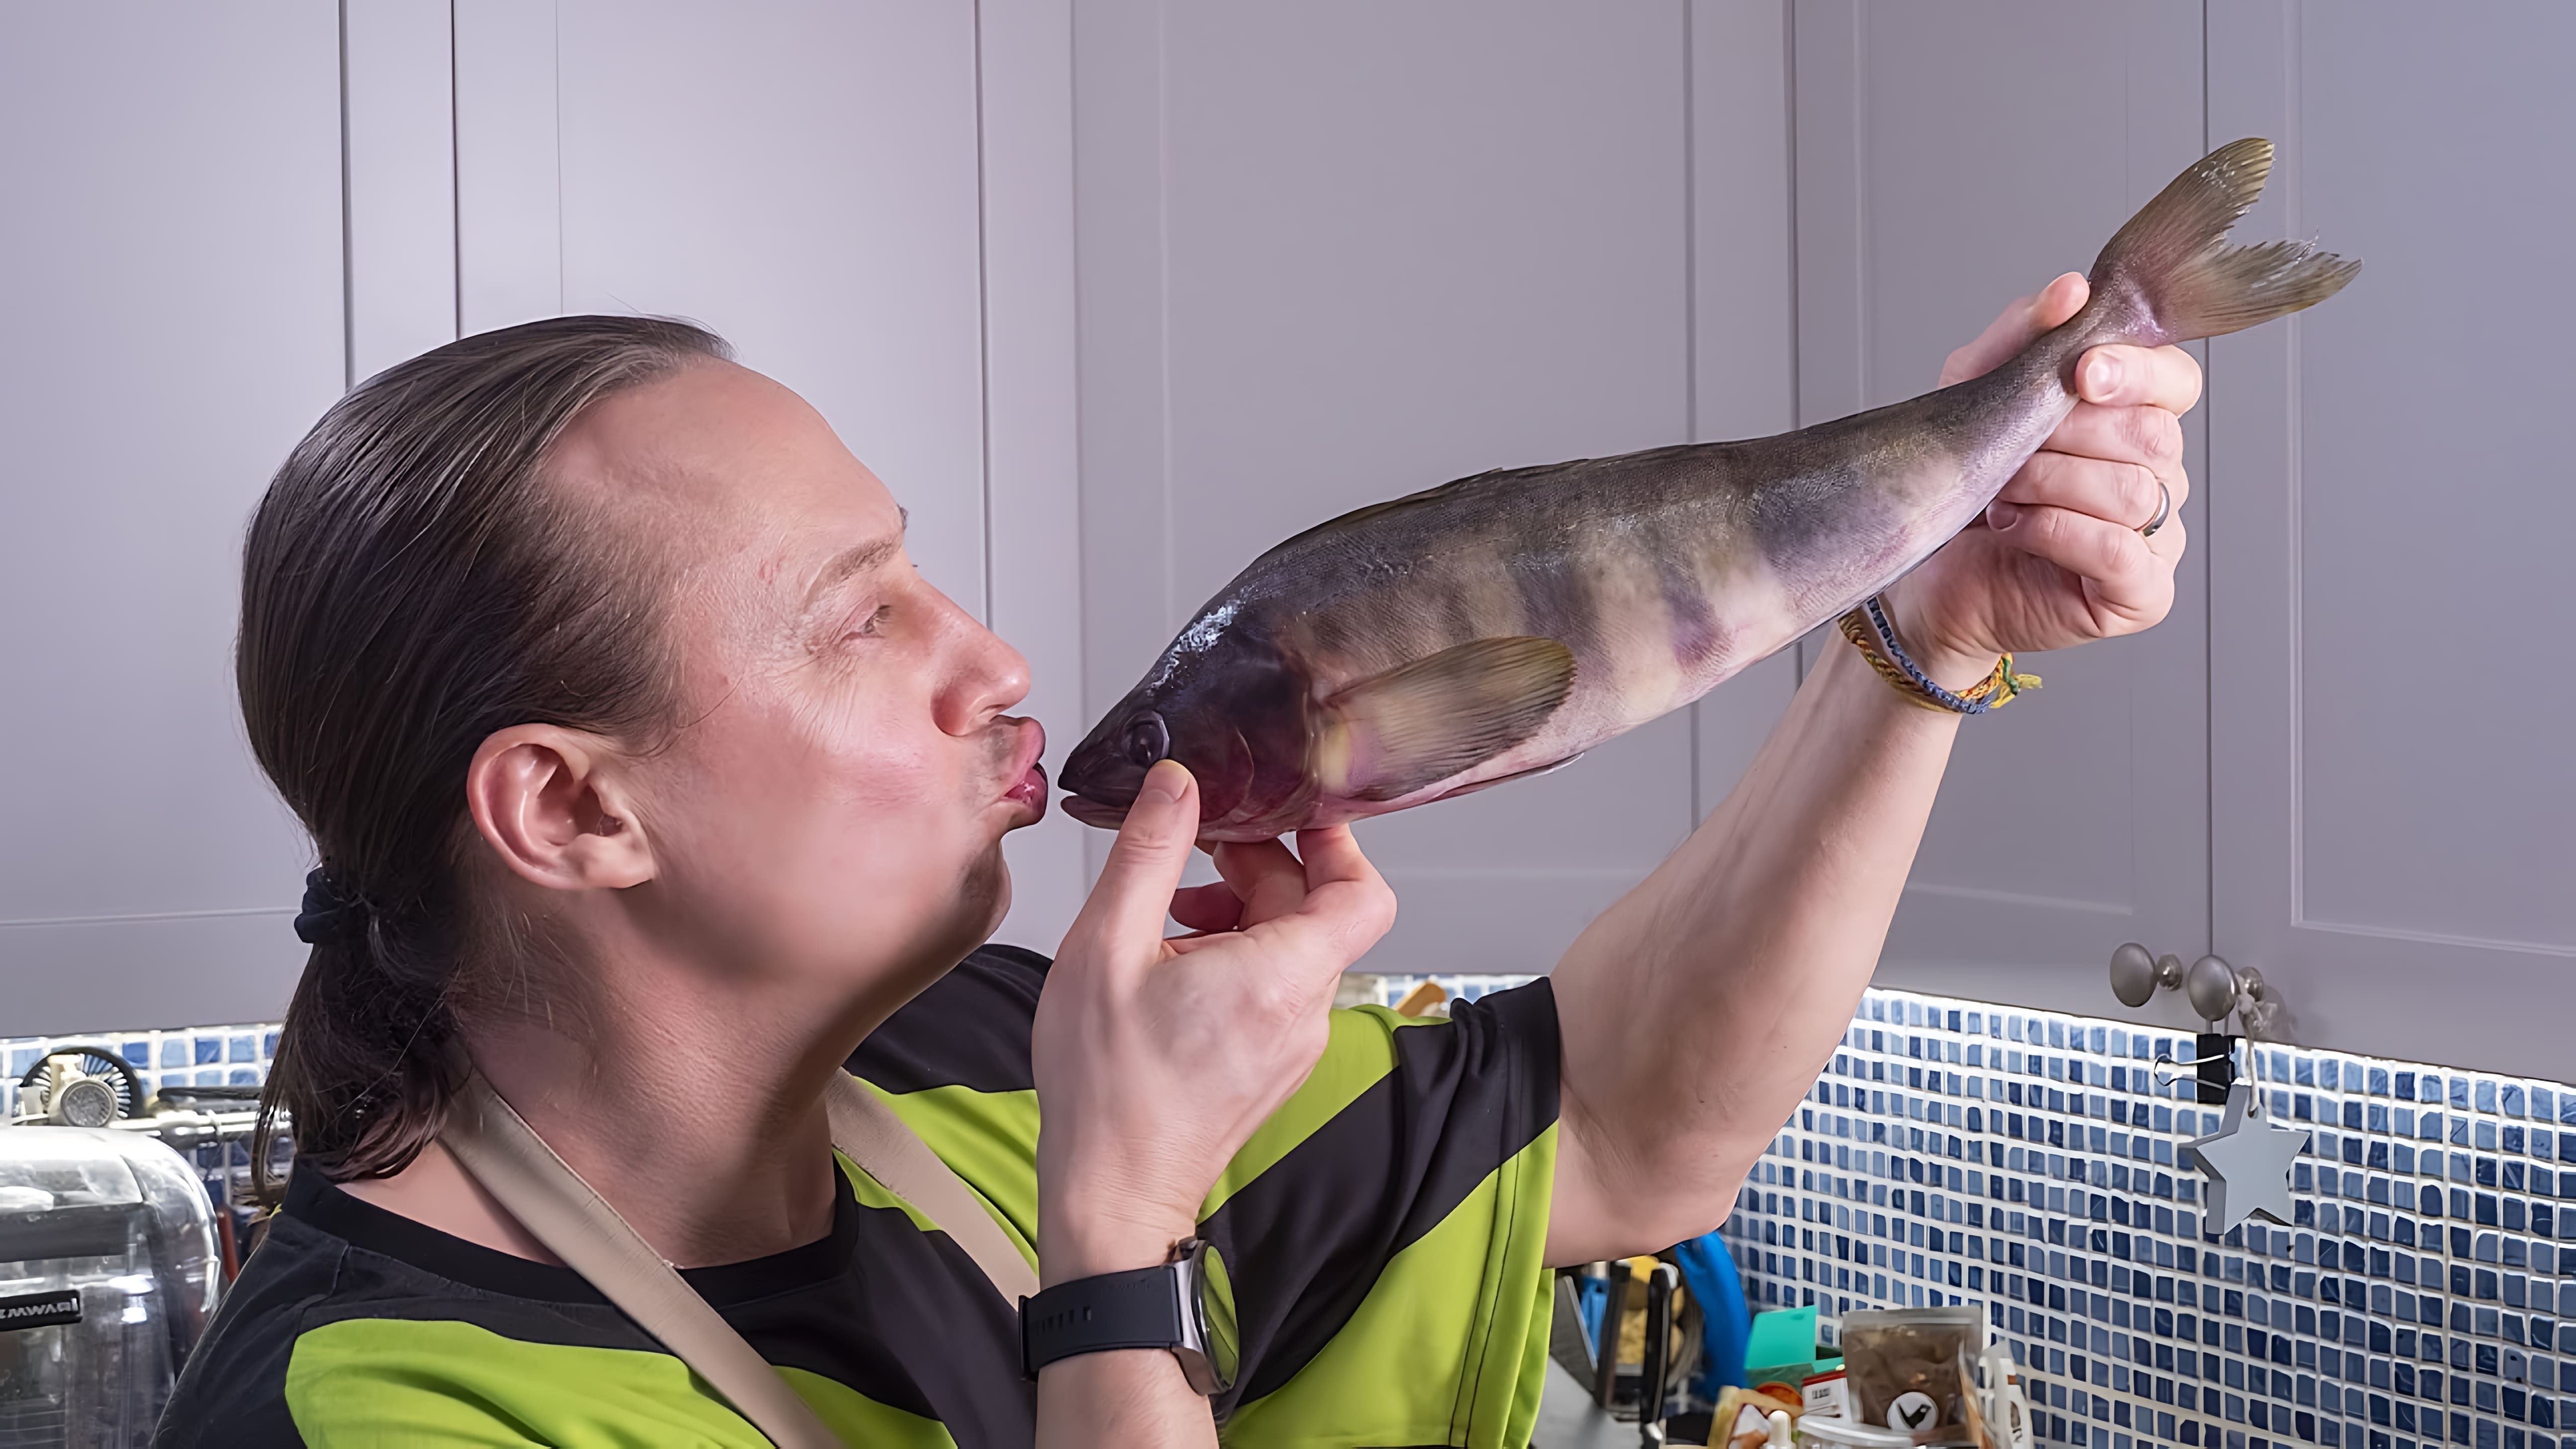 Видео рецепт жареной рыбы с хрустящим панировочным слоем и гуакамоле в качестве гарнира